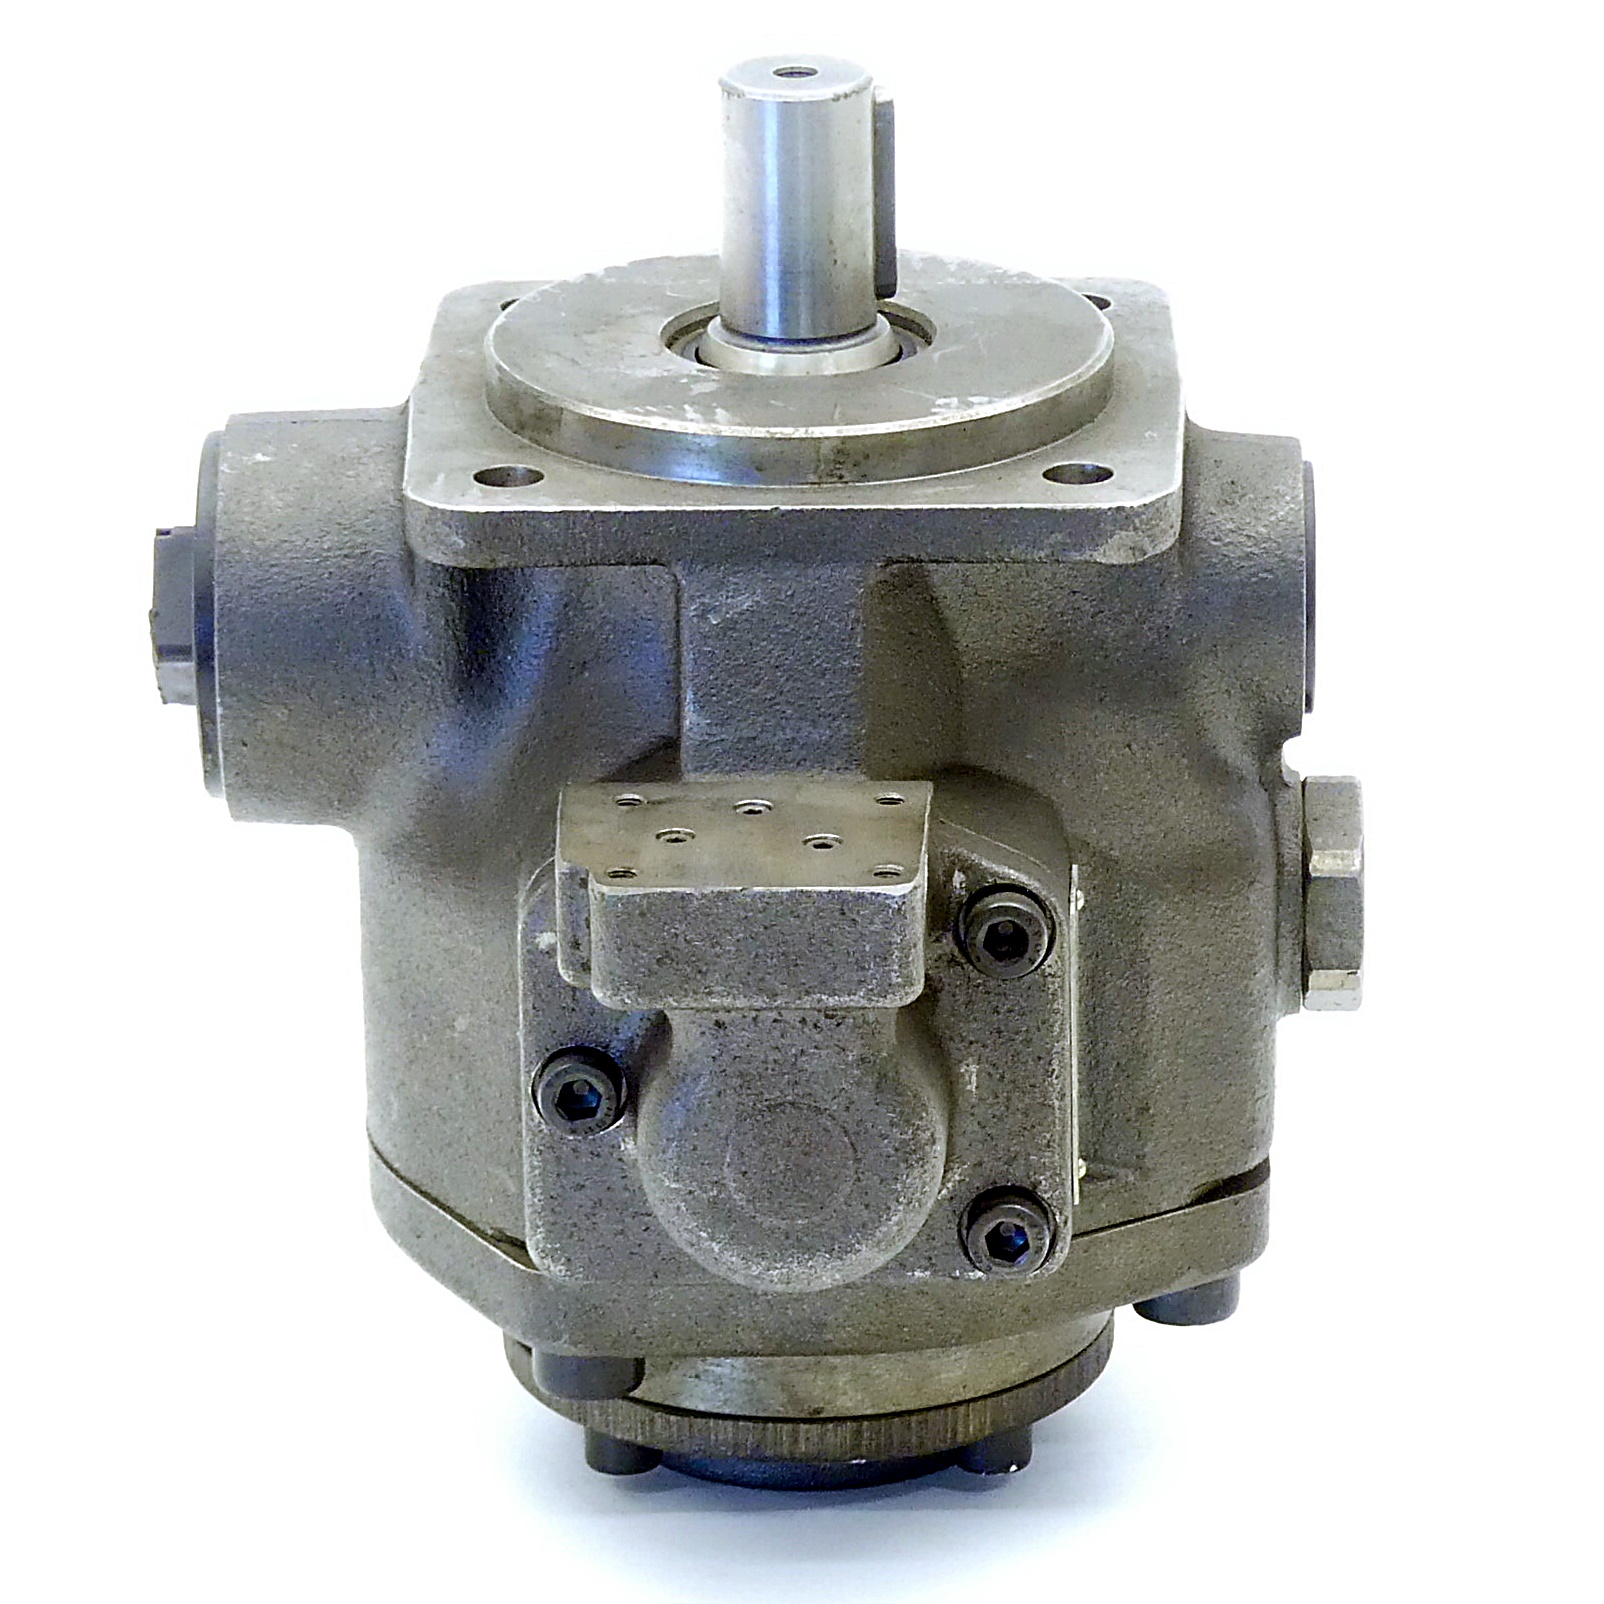 Hydraulic pump 1PF2V7-12/25-43RE01MZ0-07A0 